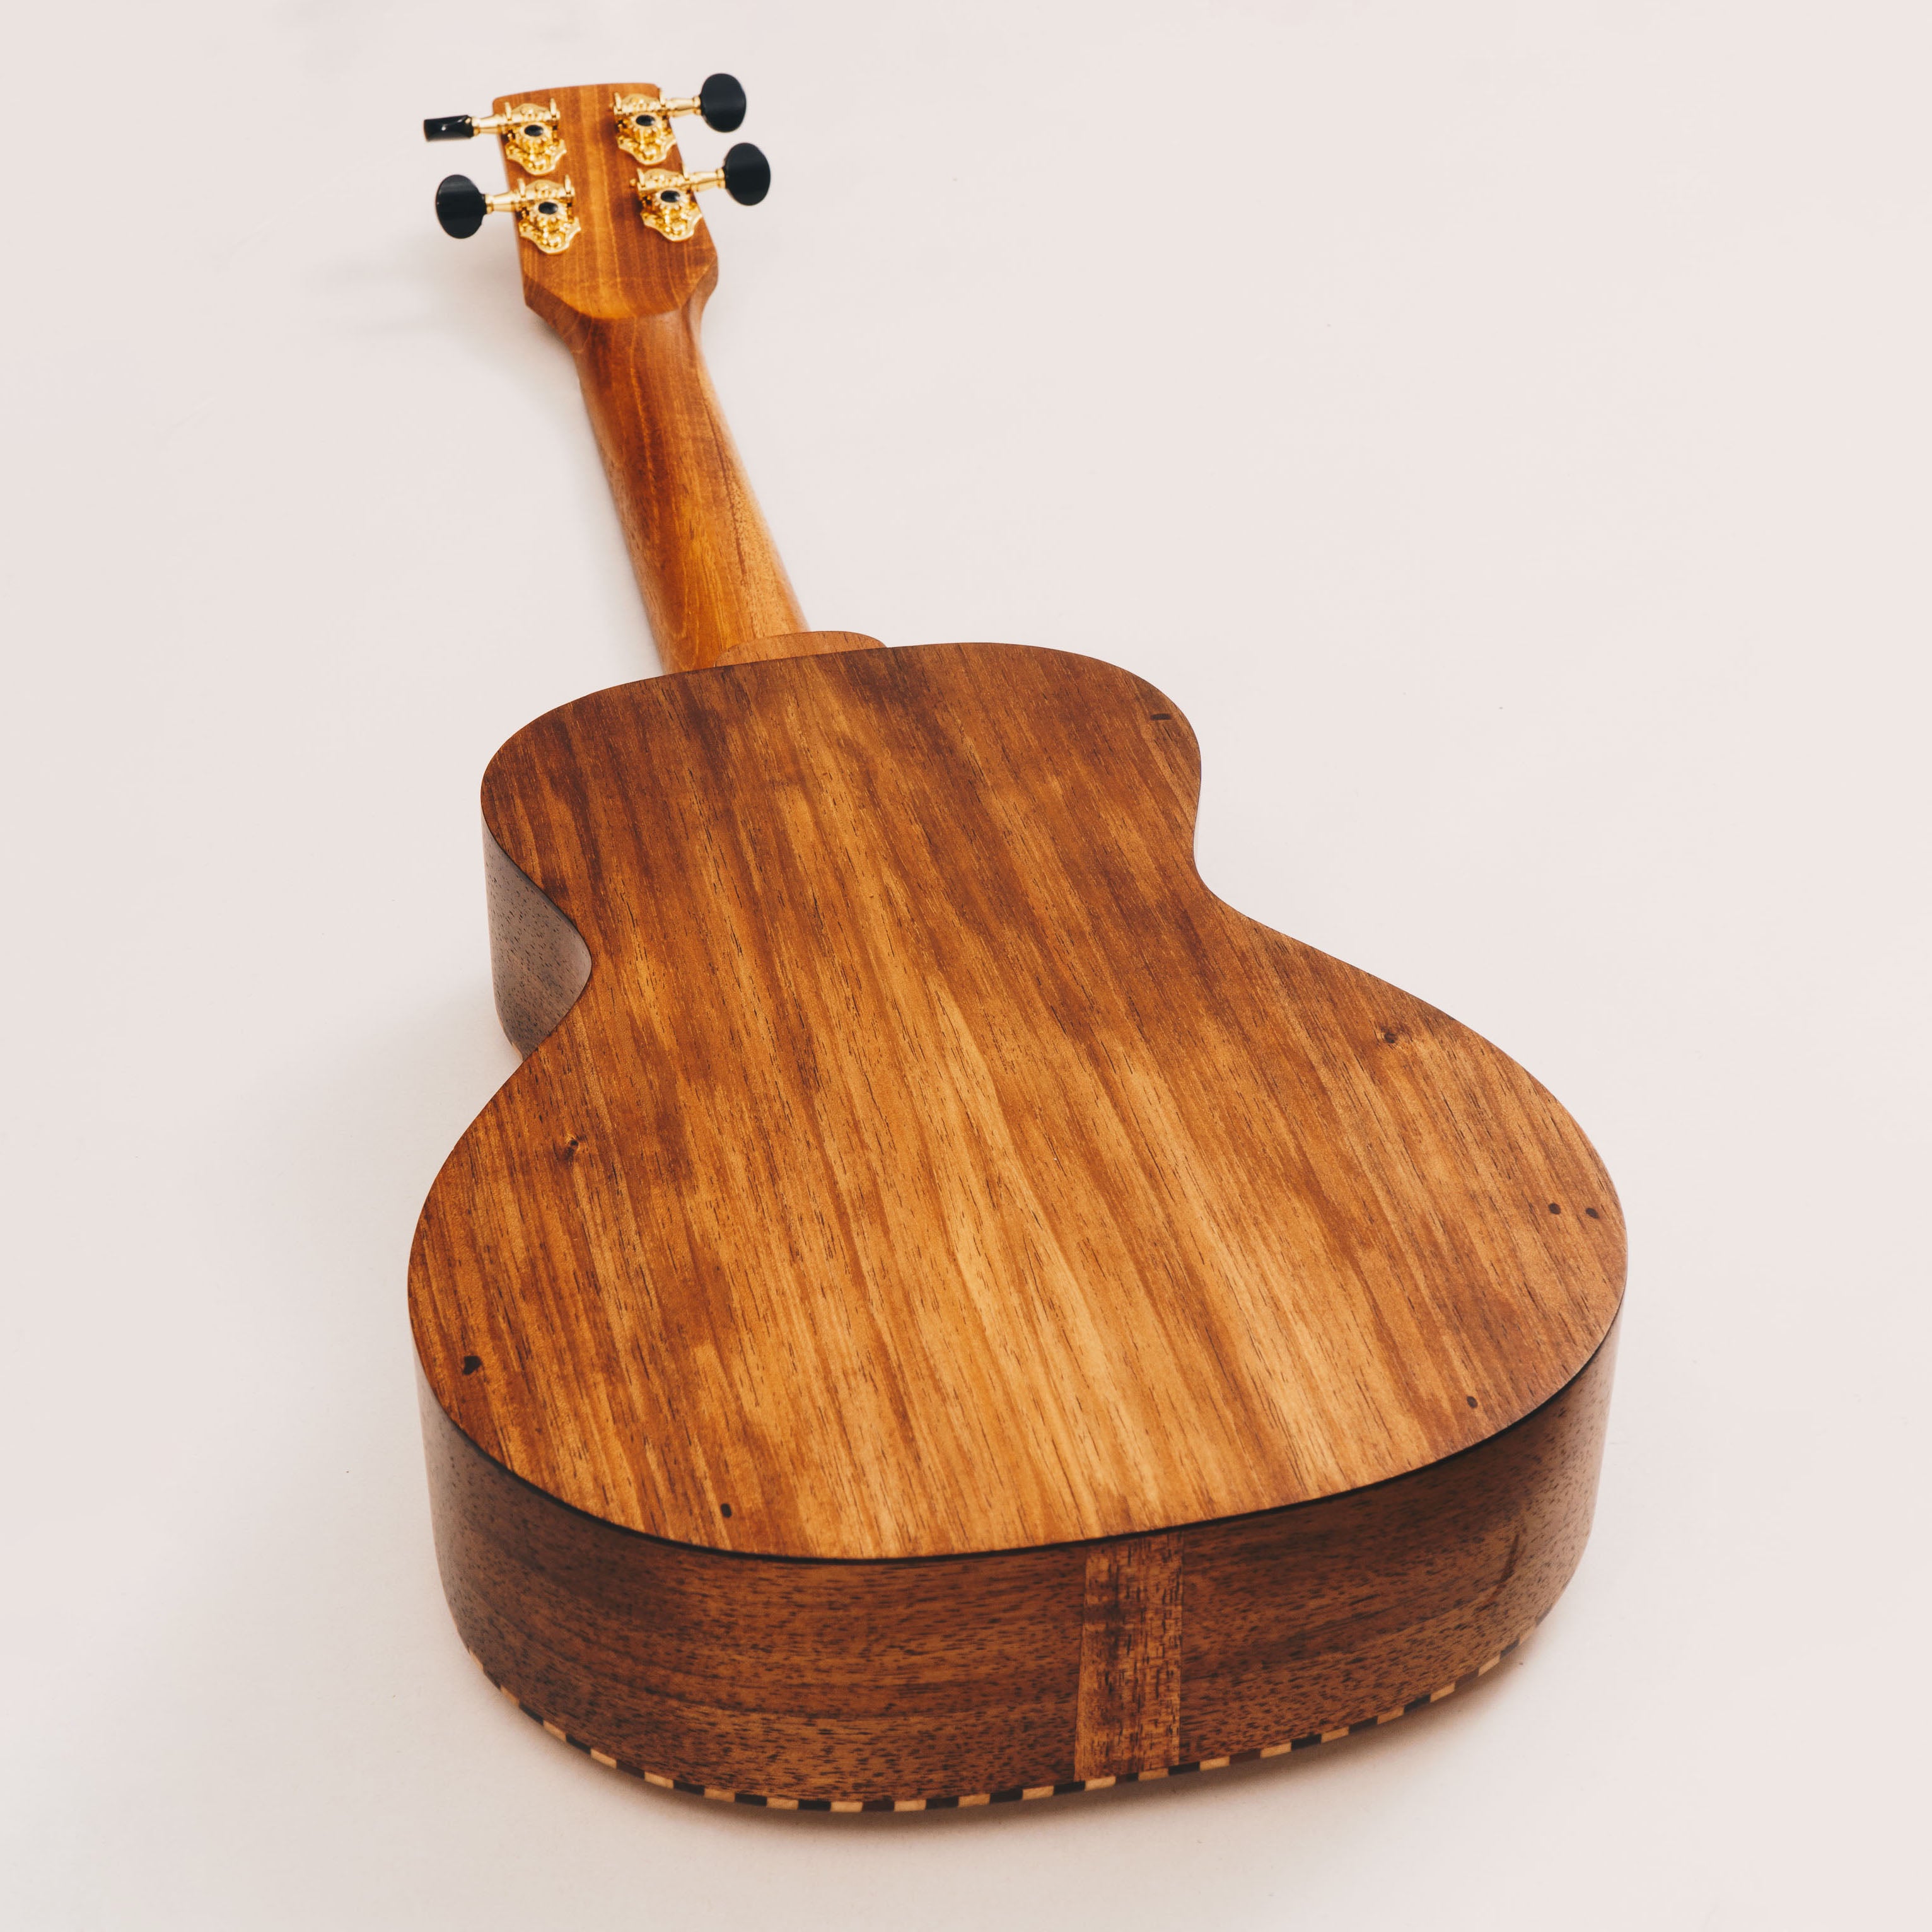 Tenor Ukulele - Tasmanian Blackwood & Sitka Spruce - 'Style 3' Ukulele by master luthier Richard Wilson. Handcrafted in Australia. Serial no. RW2336-426.